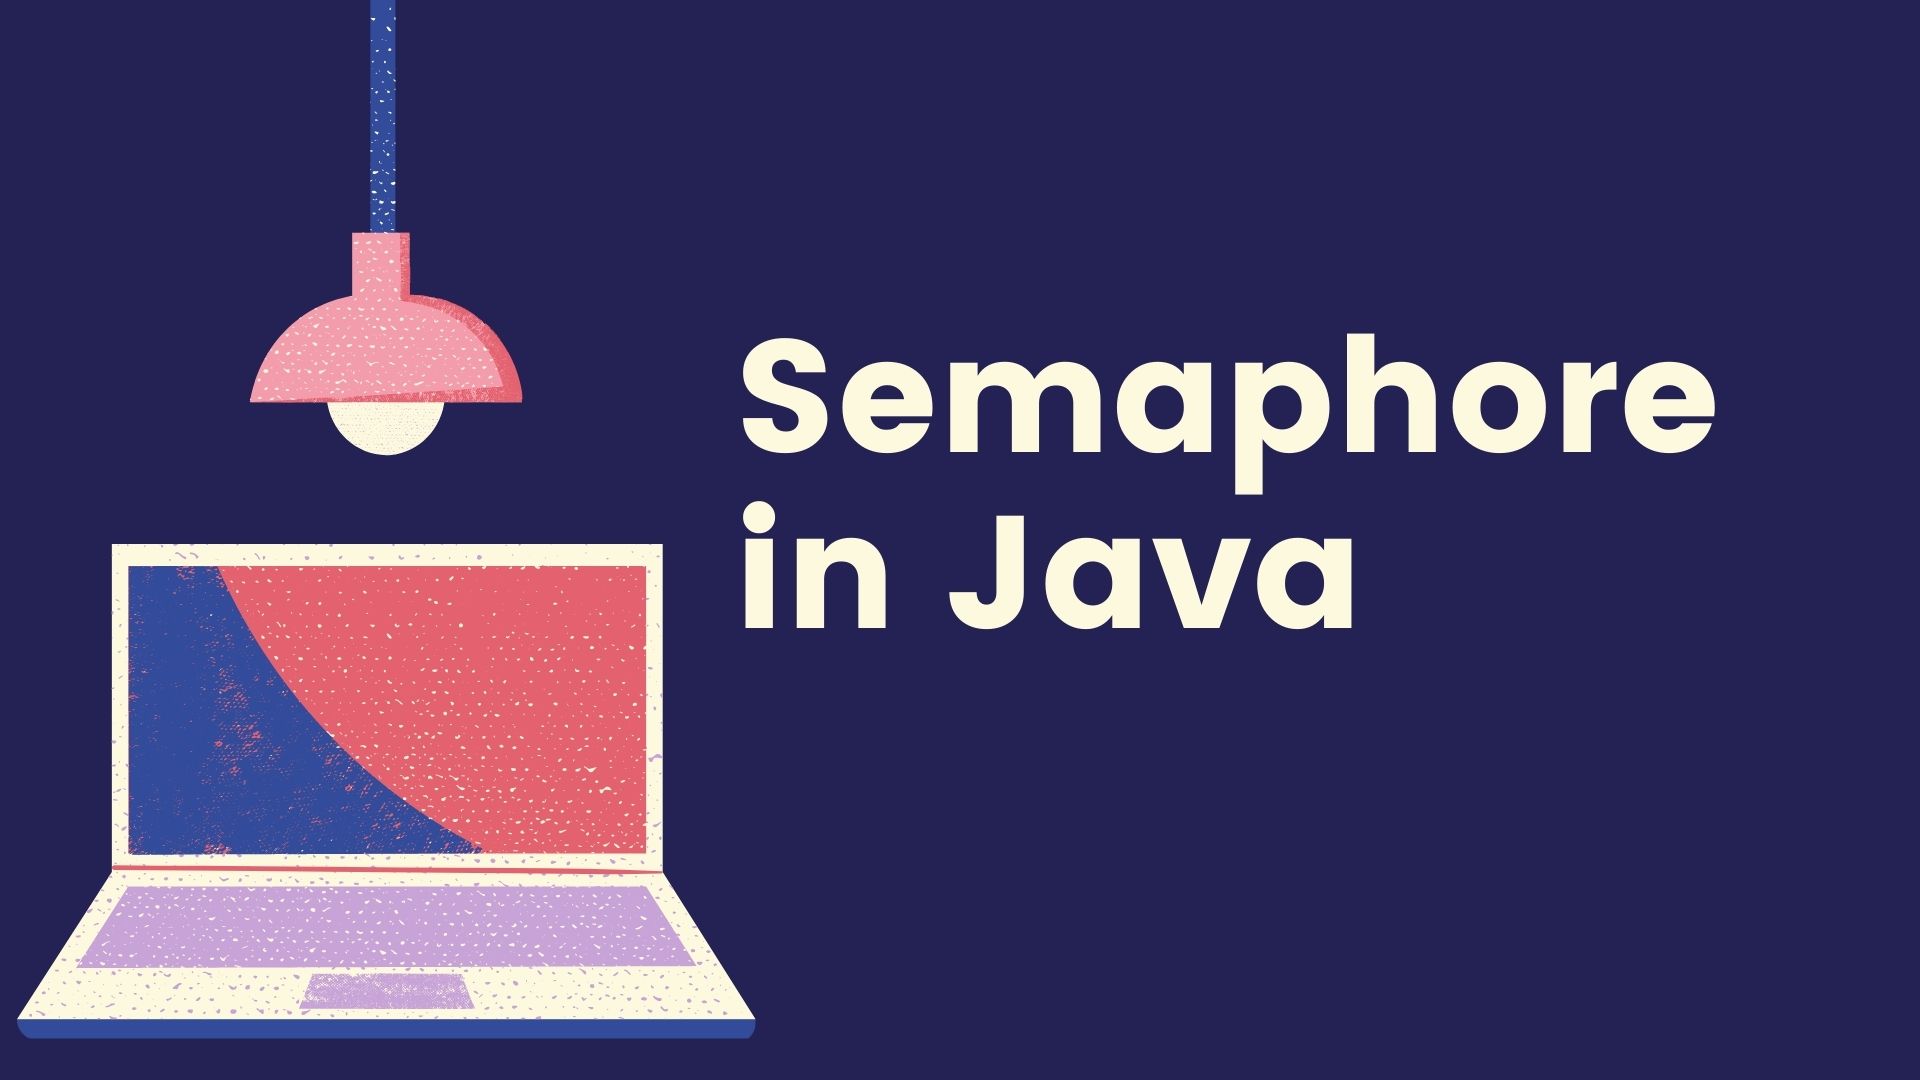 Semaphore in Java